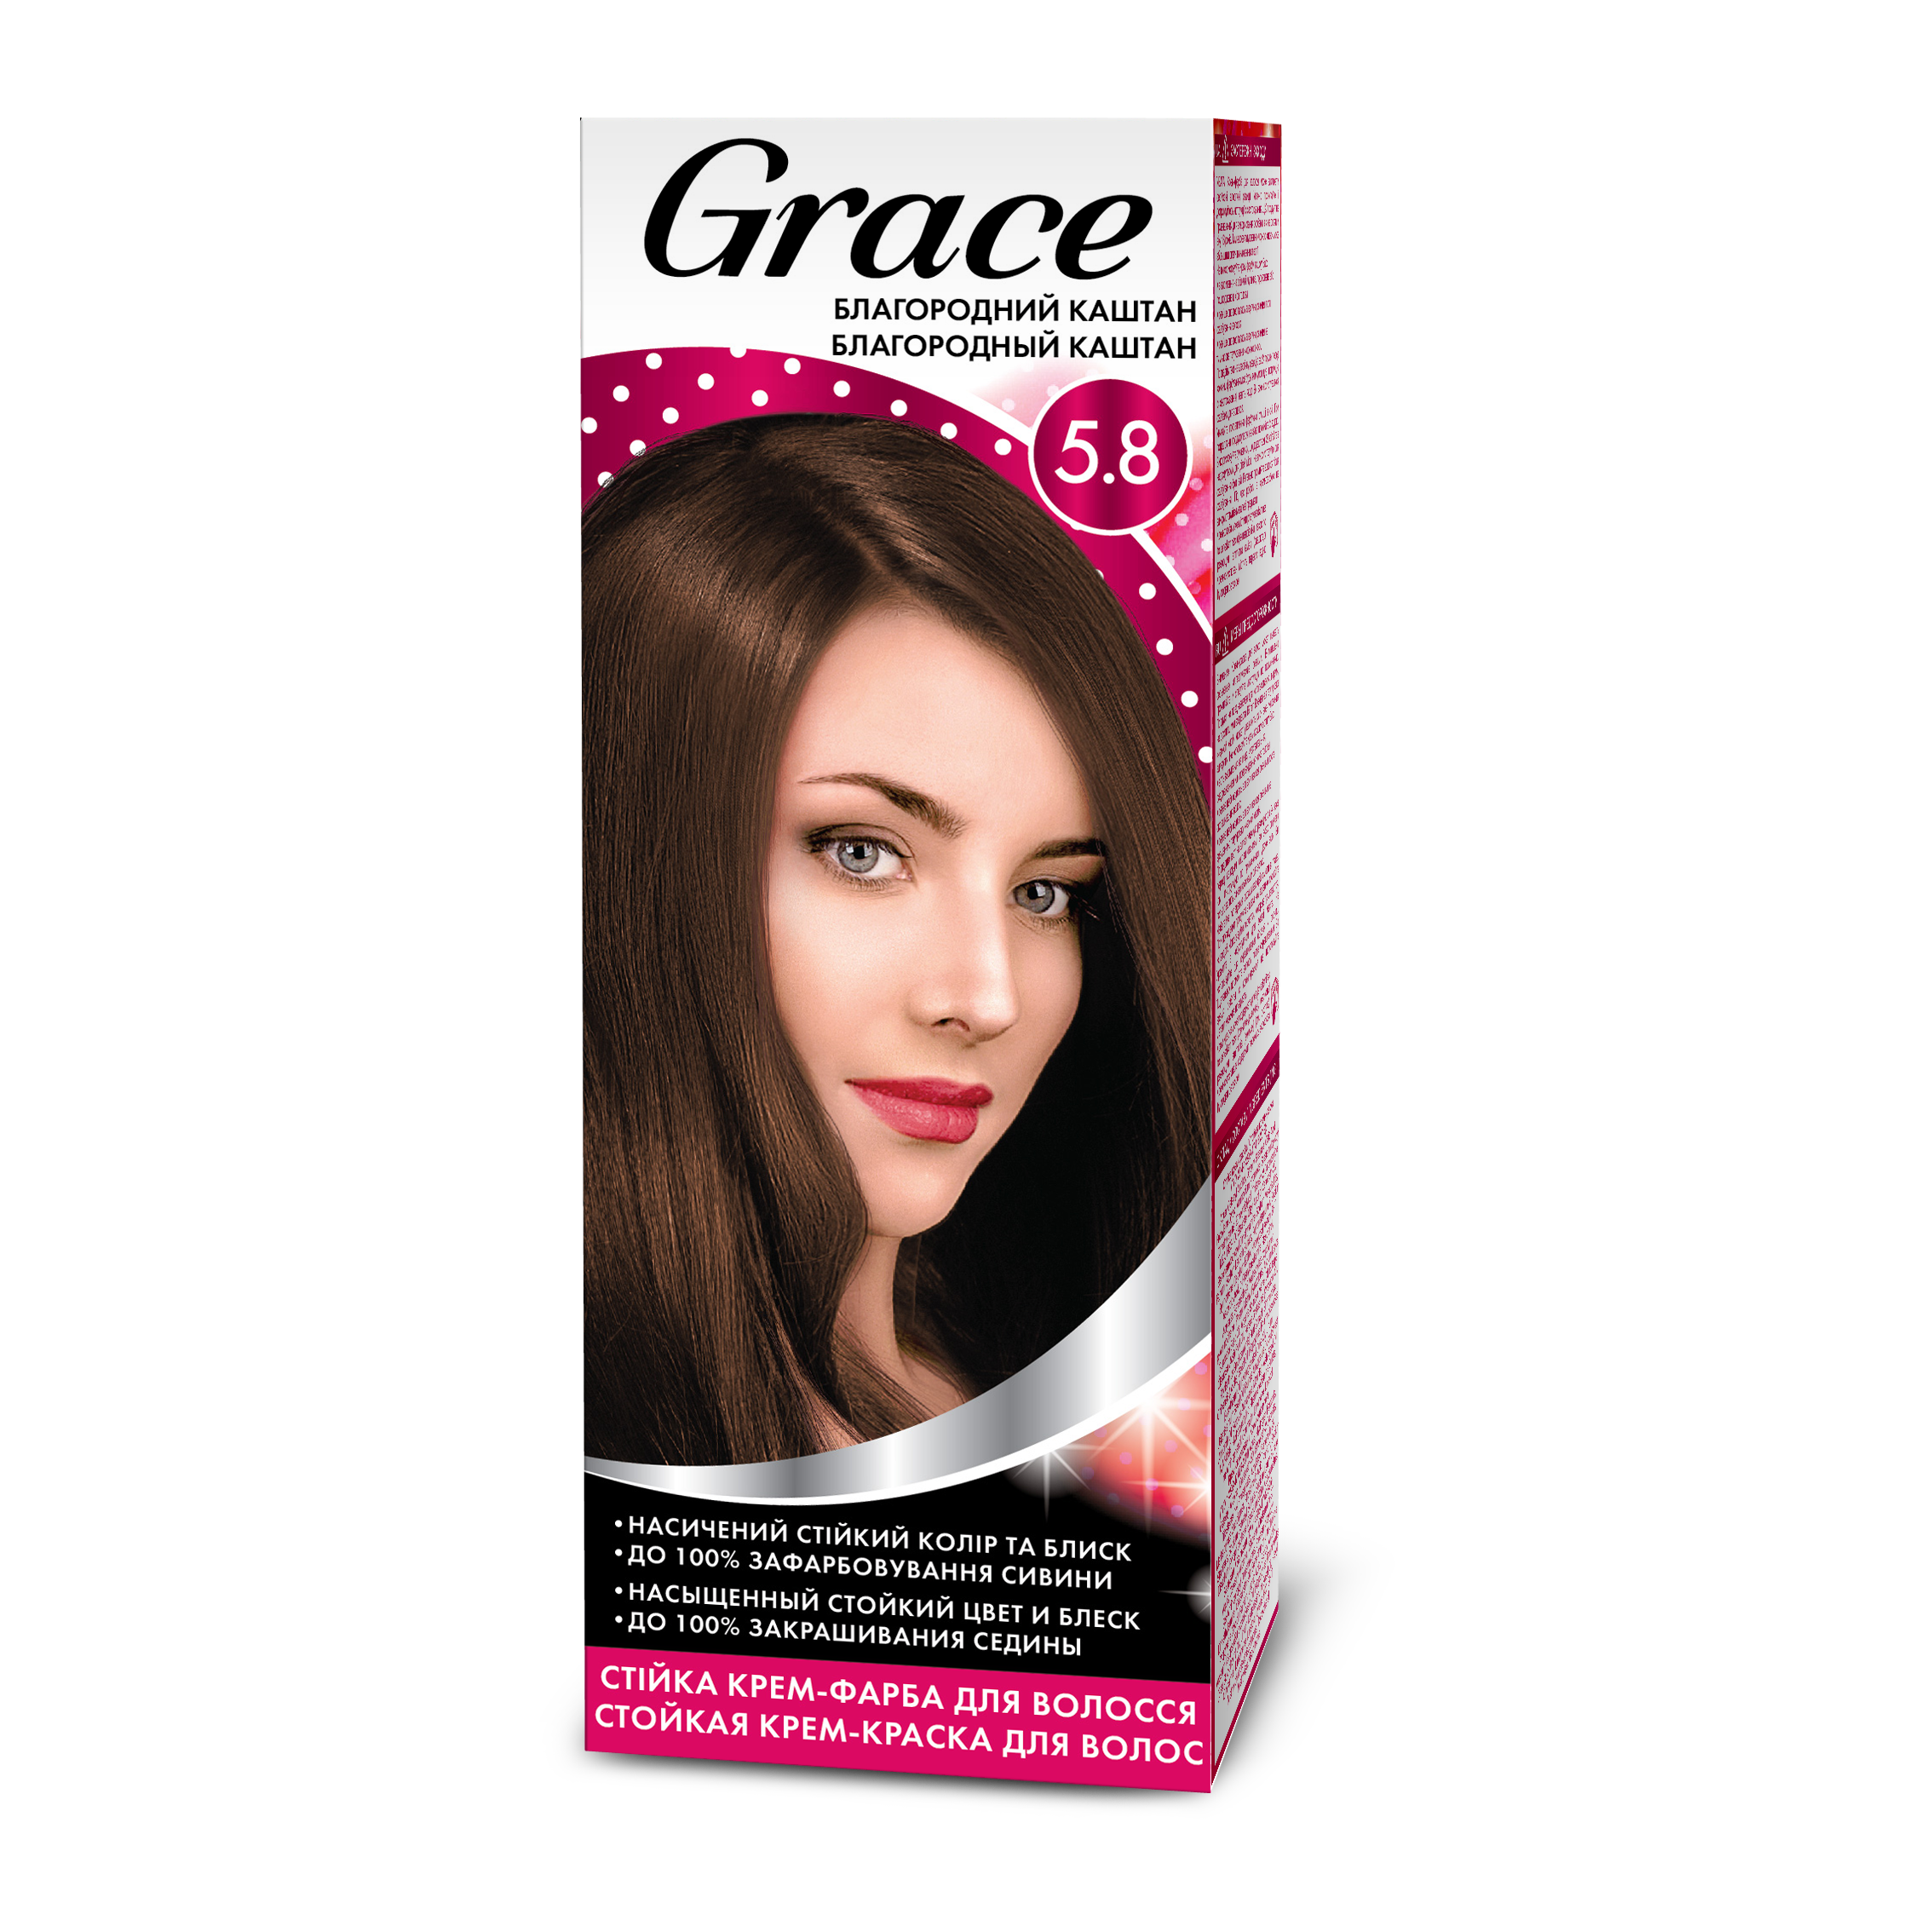 Стійка крем-фарба для волосся Grace Благородний каштан 5.8